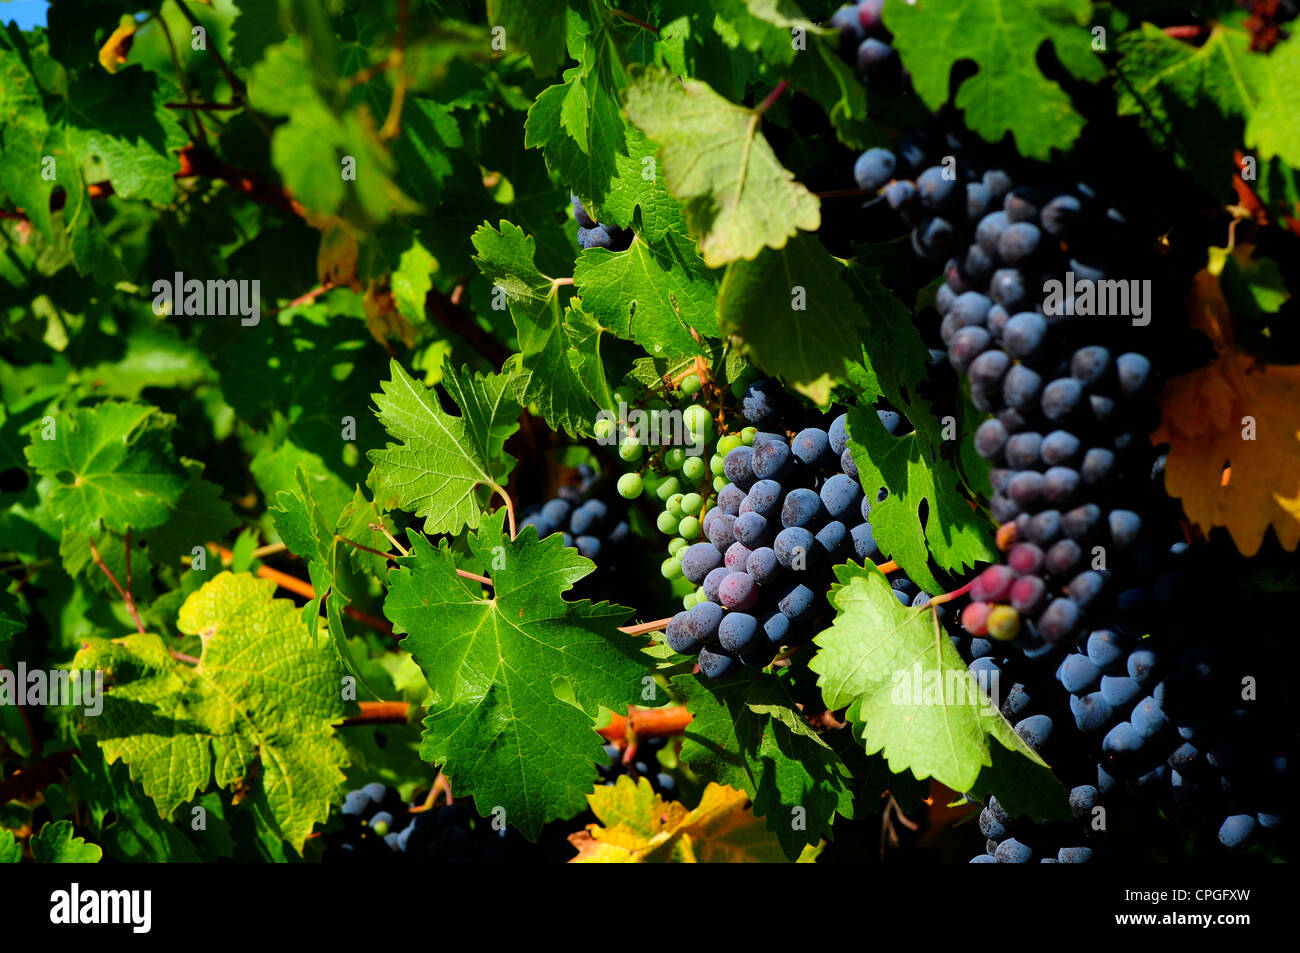 Le Zinfandel grapes growing sur des vignes dans la région de Napa / Sonoma, California, USA Banque D'Images